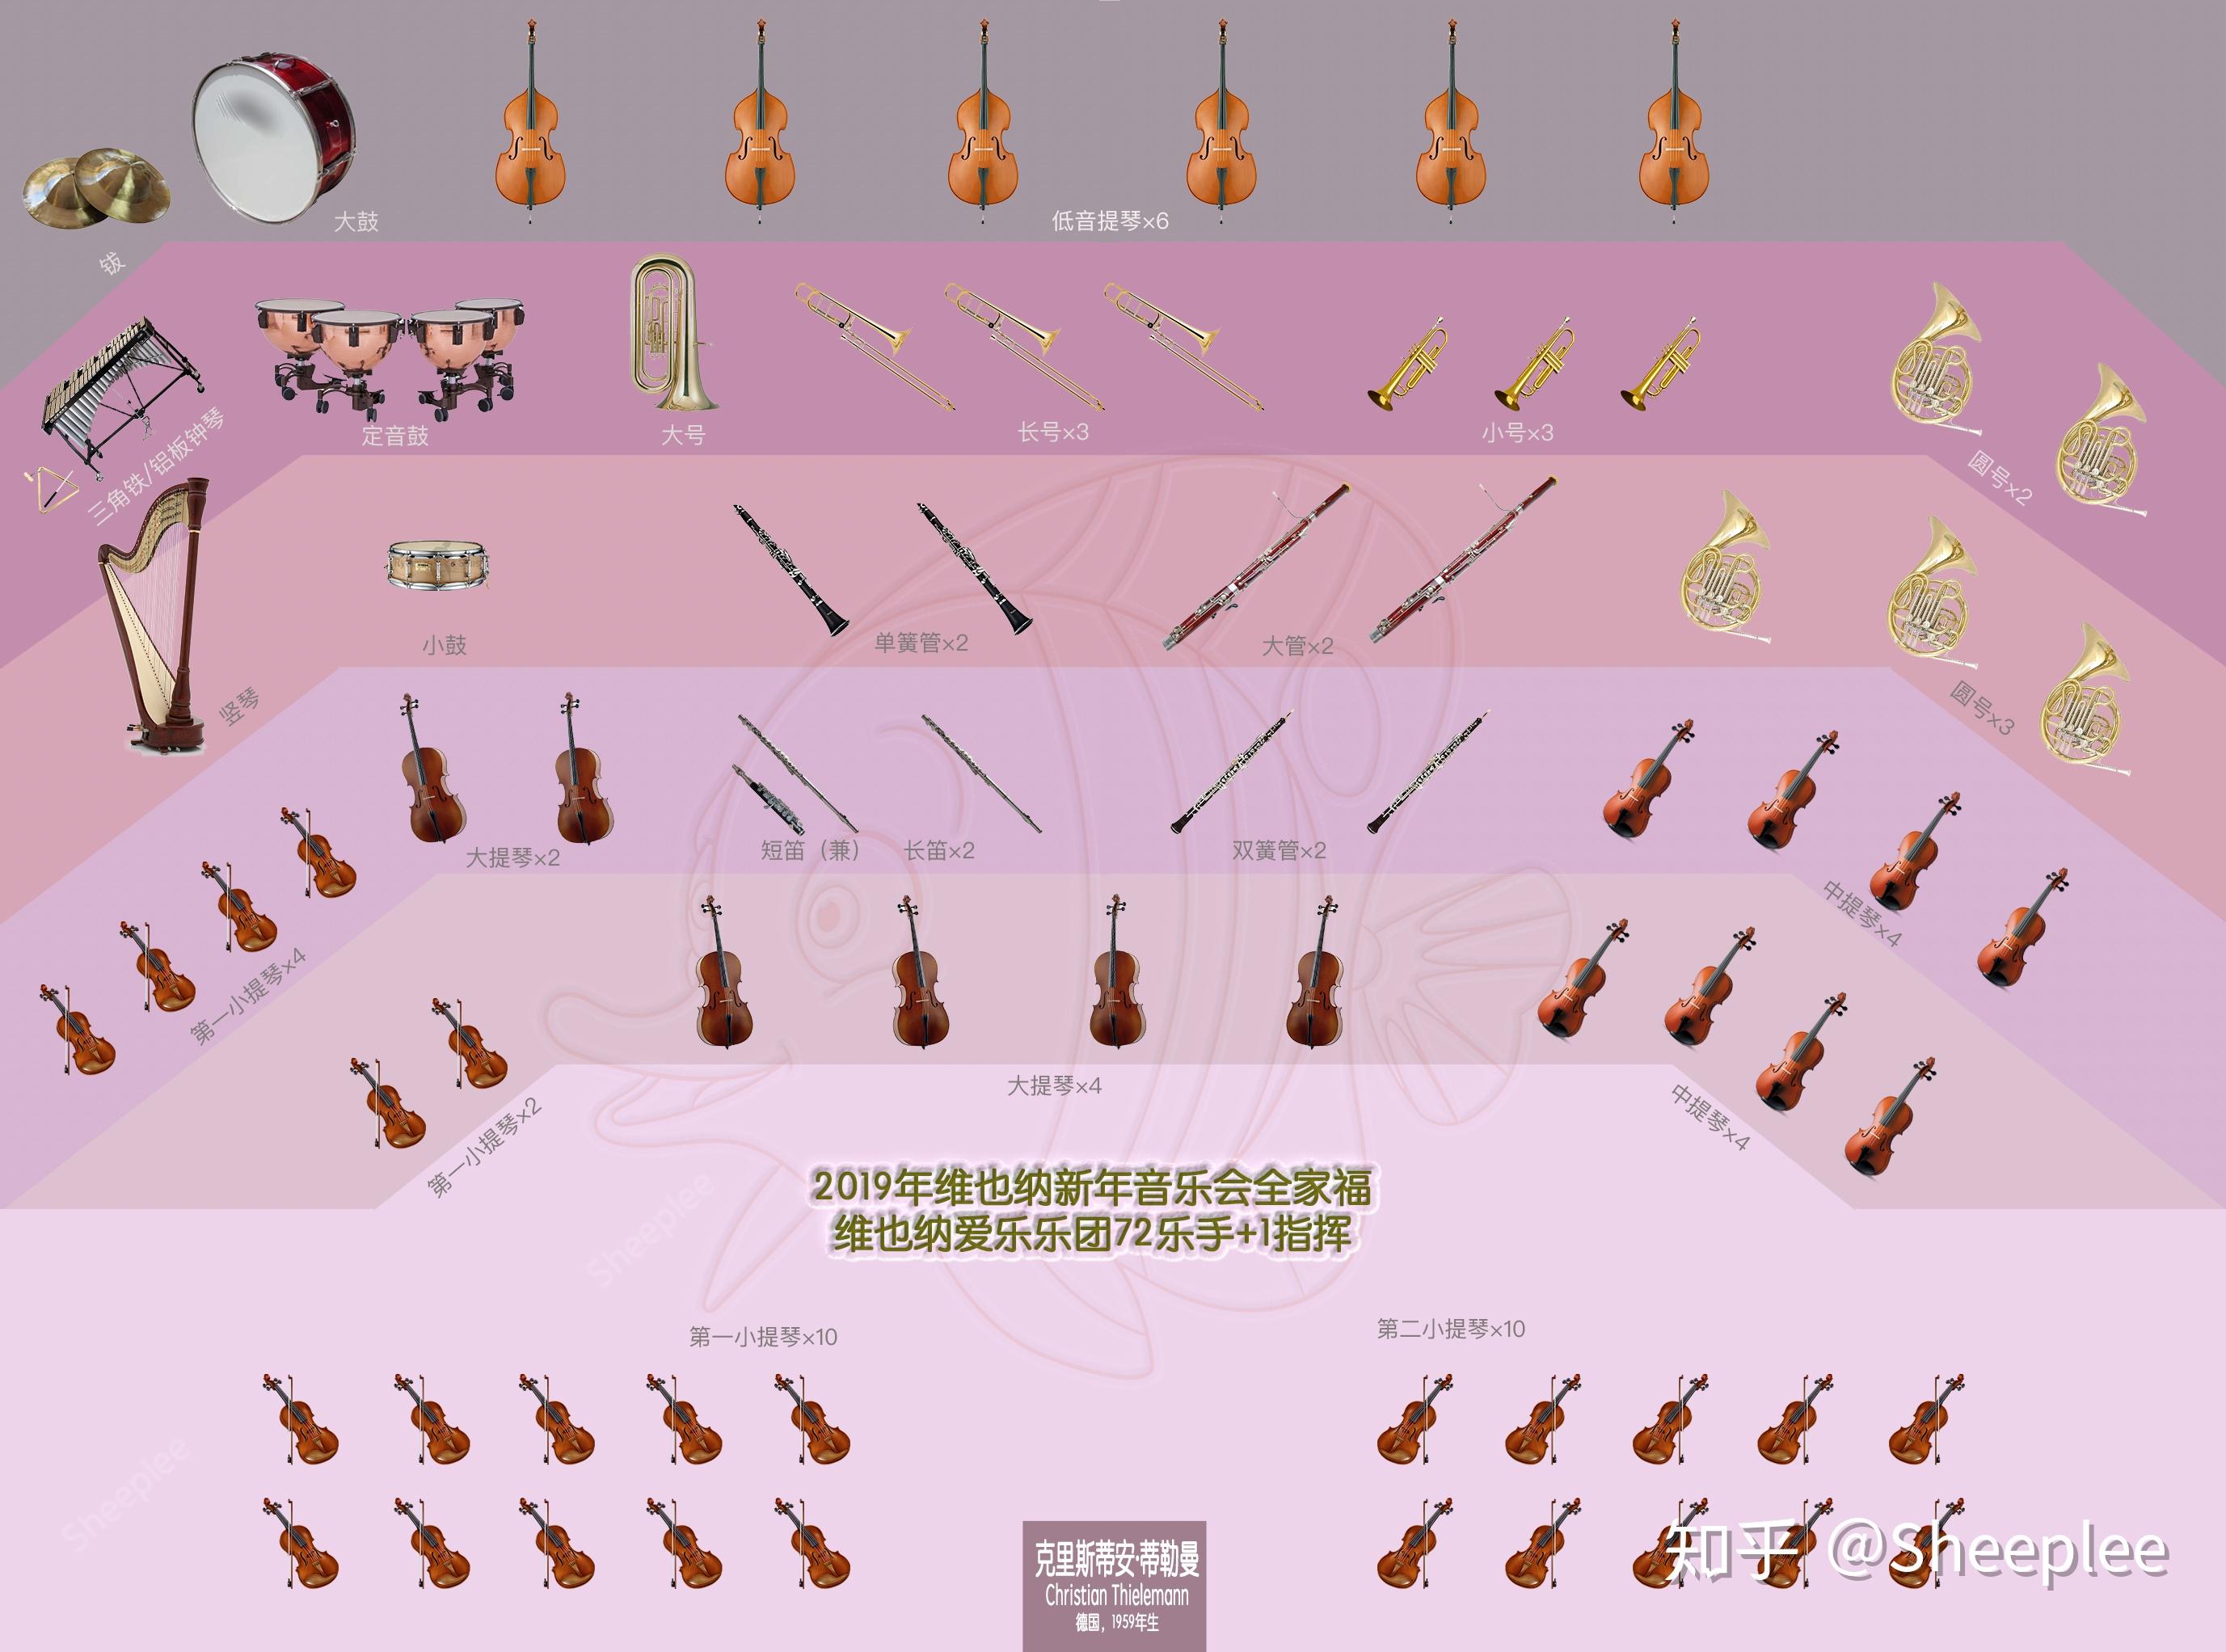 小型管弦乐队乐器组成图片